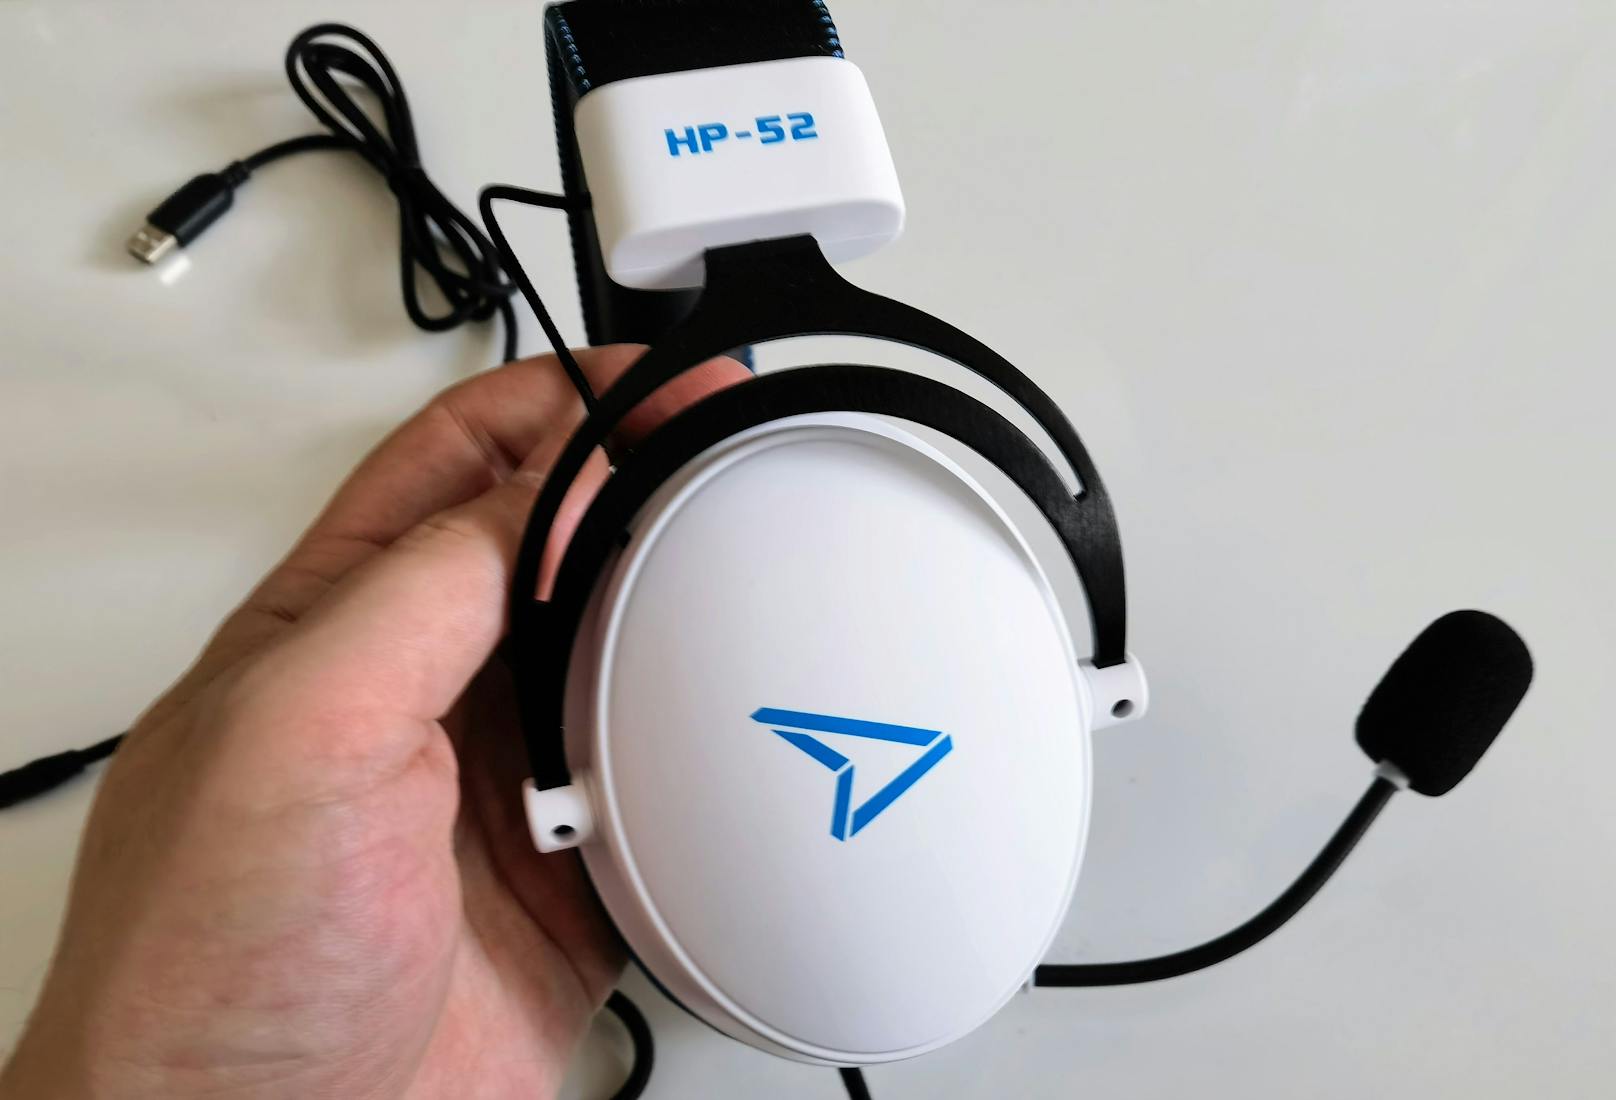 Für Ästheten: Das weiß-blau-schwarze Design des Headsets passt übrigens perfekt zum Look der PlayStation 5. An der Seite der Kopfhörer prangt auch ein nettes, leicht glänzendes Marken-Logo.